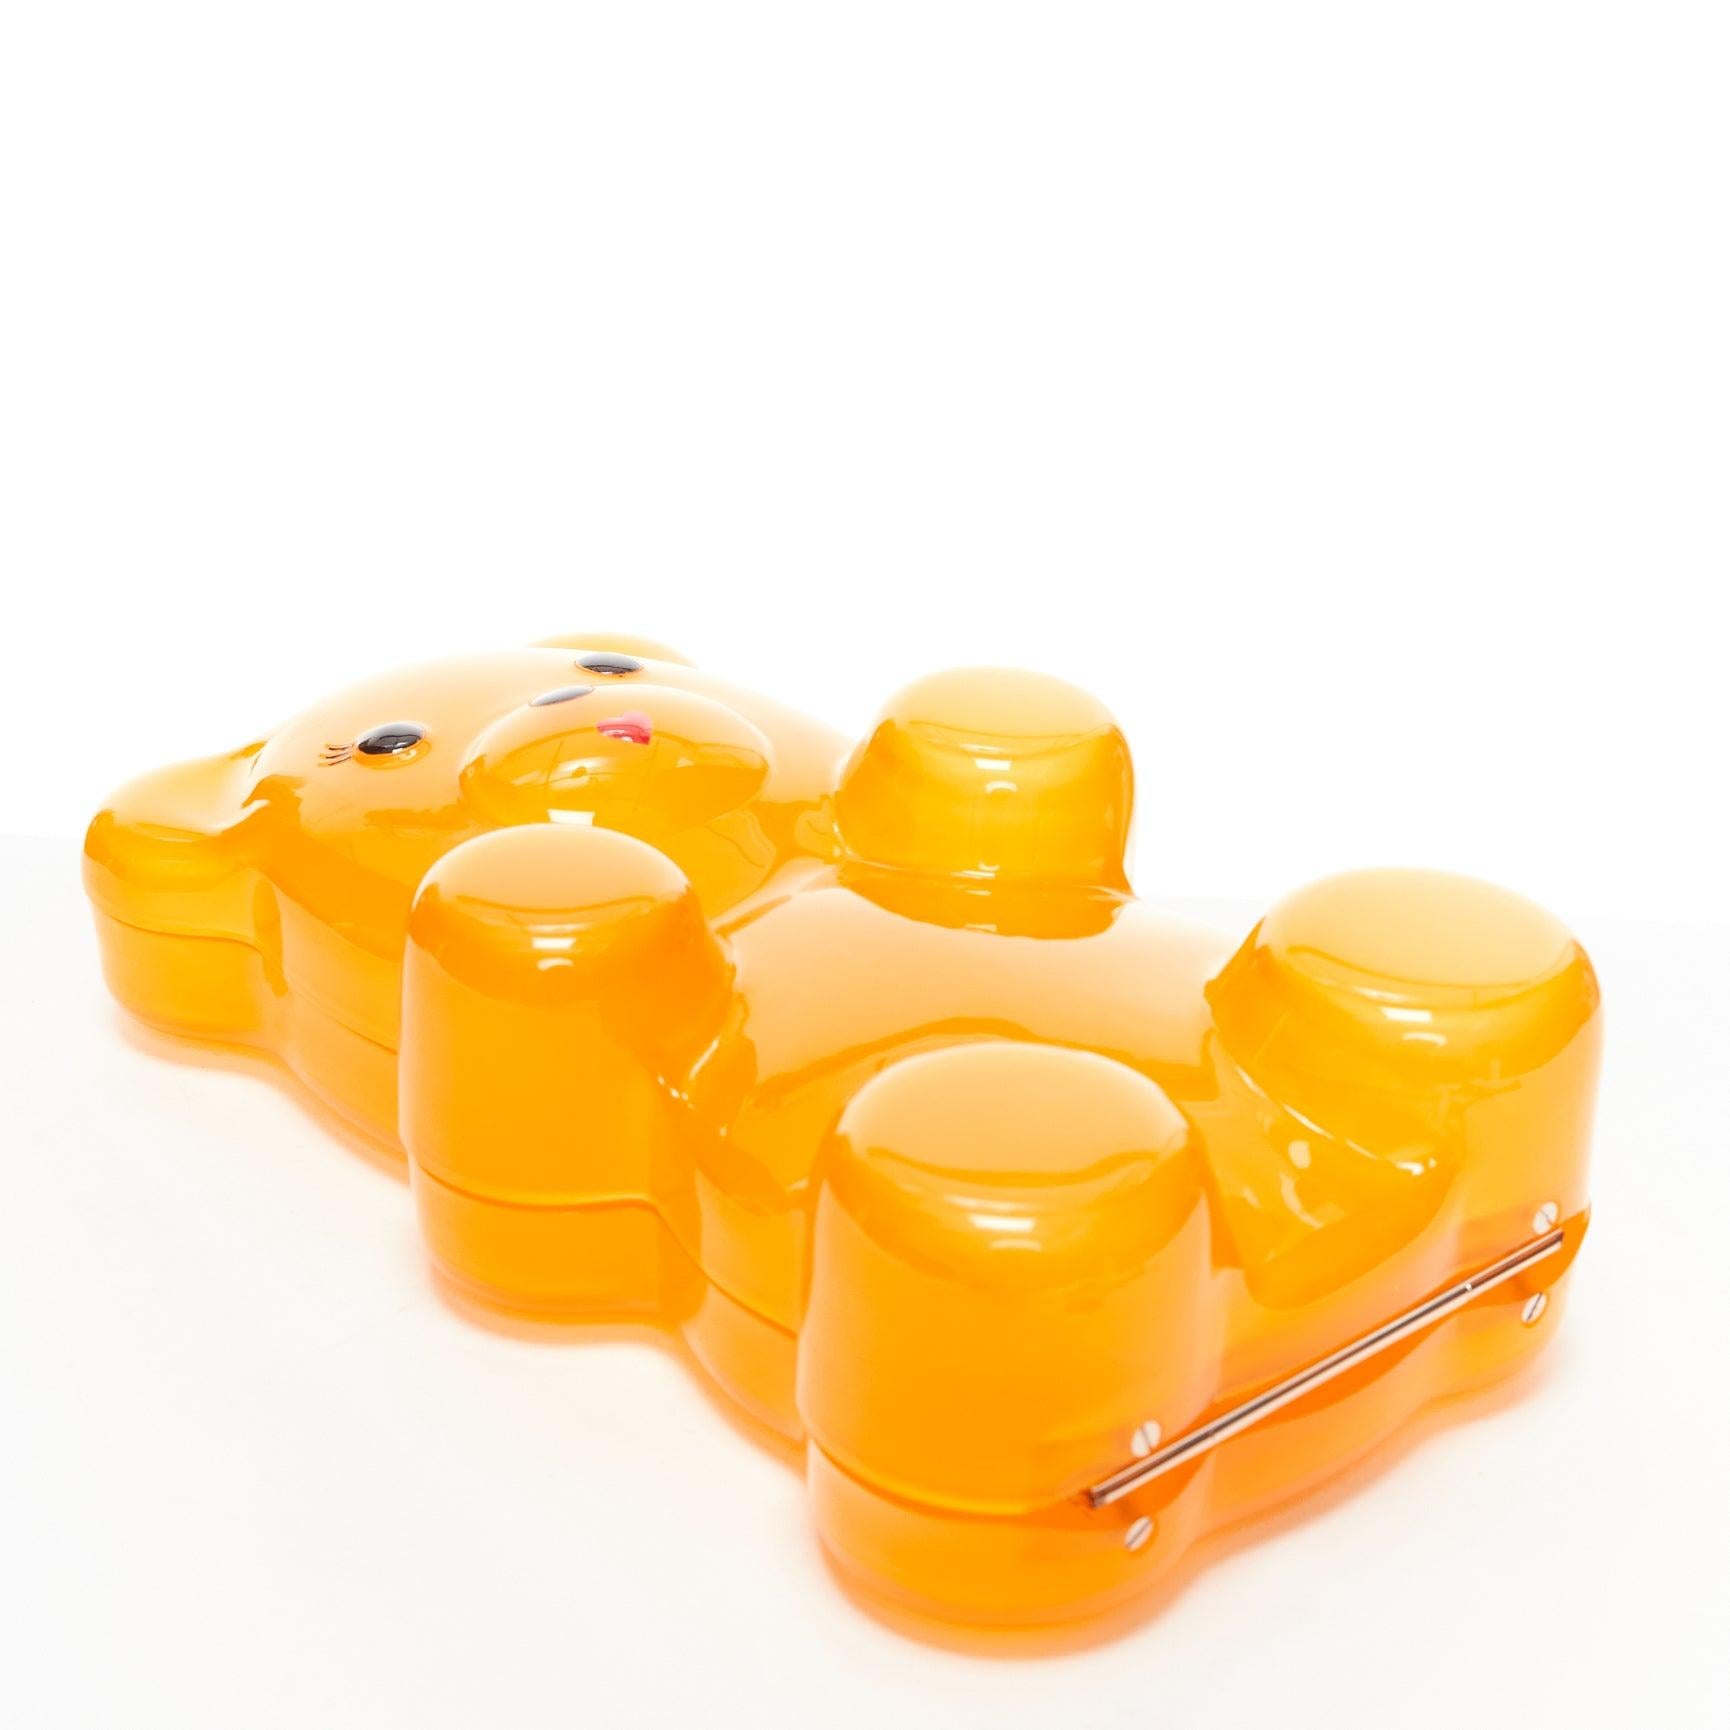 CHARLOTTE OLYMPIA egg yolk yellow gummy bear acrylic box clutch bag For Sale 2